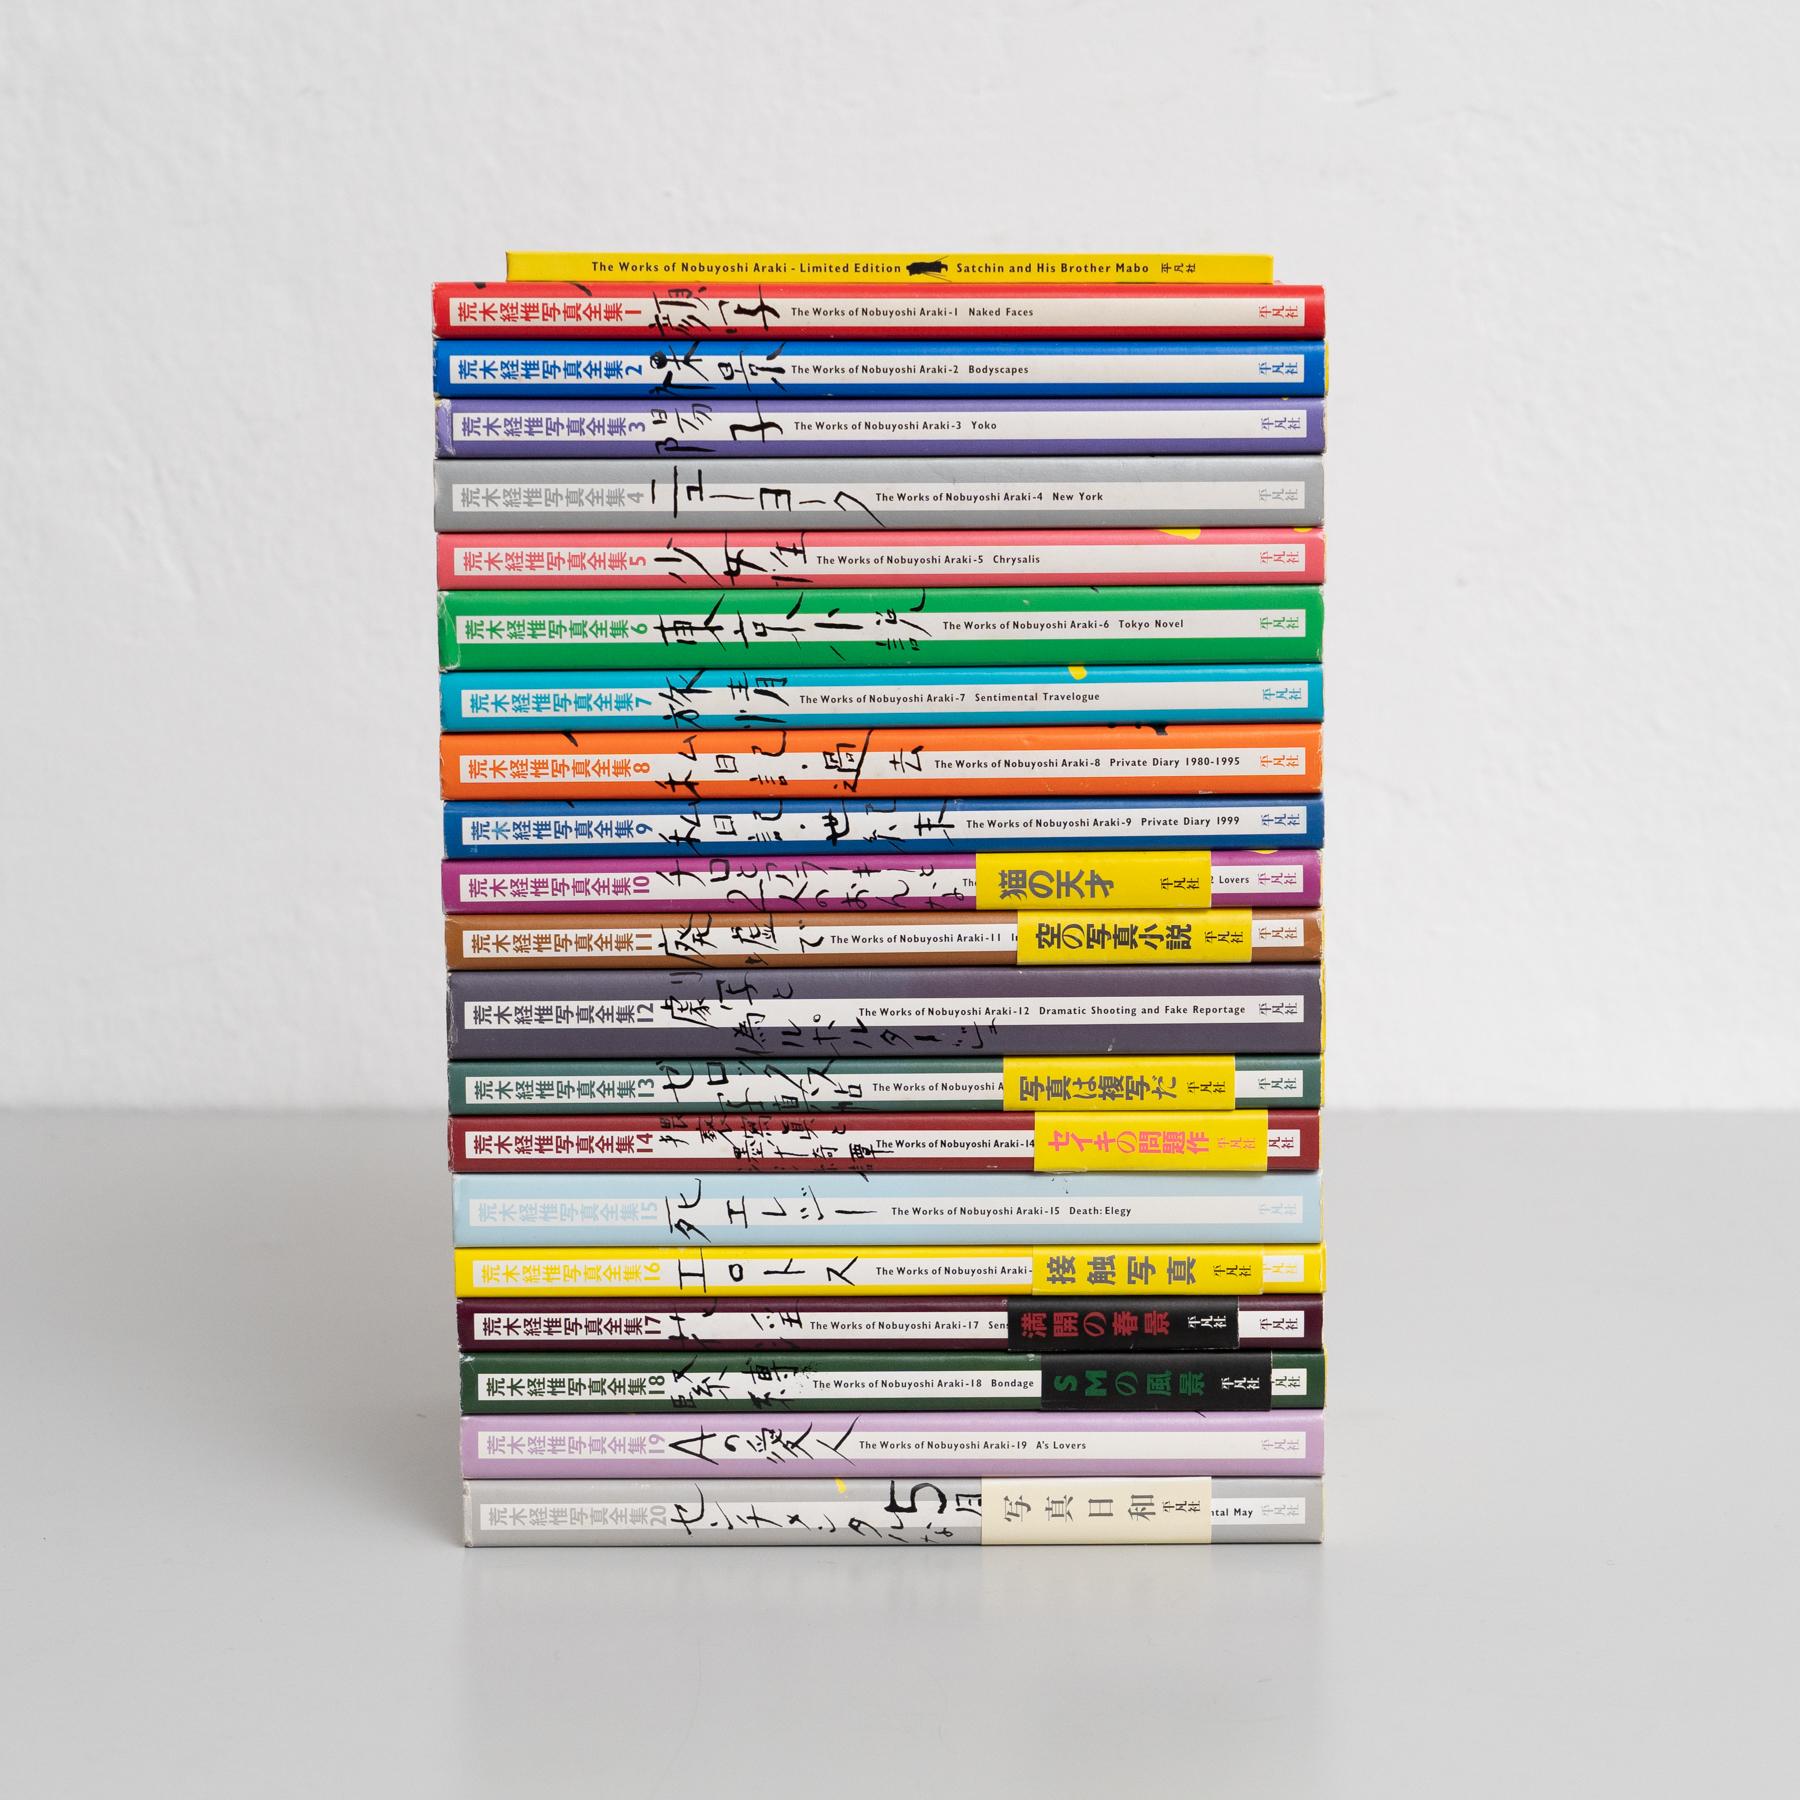 Werke von Nobuyoshi Araki Buch Komplette Collection 1-20 plus Sonderband Nobuyoshi Araki Buch Satchin und sein Bruder Mabo / 1stn in 1997

Die Werke von Nobuyoshi Araki Buchsammlung komplett 1-20 veröffentlicht in Japan im Jahr 1996 von Heibonsha